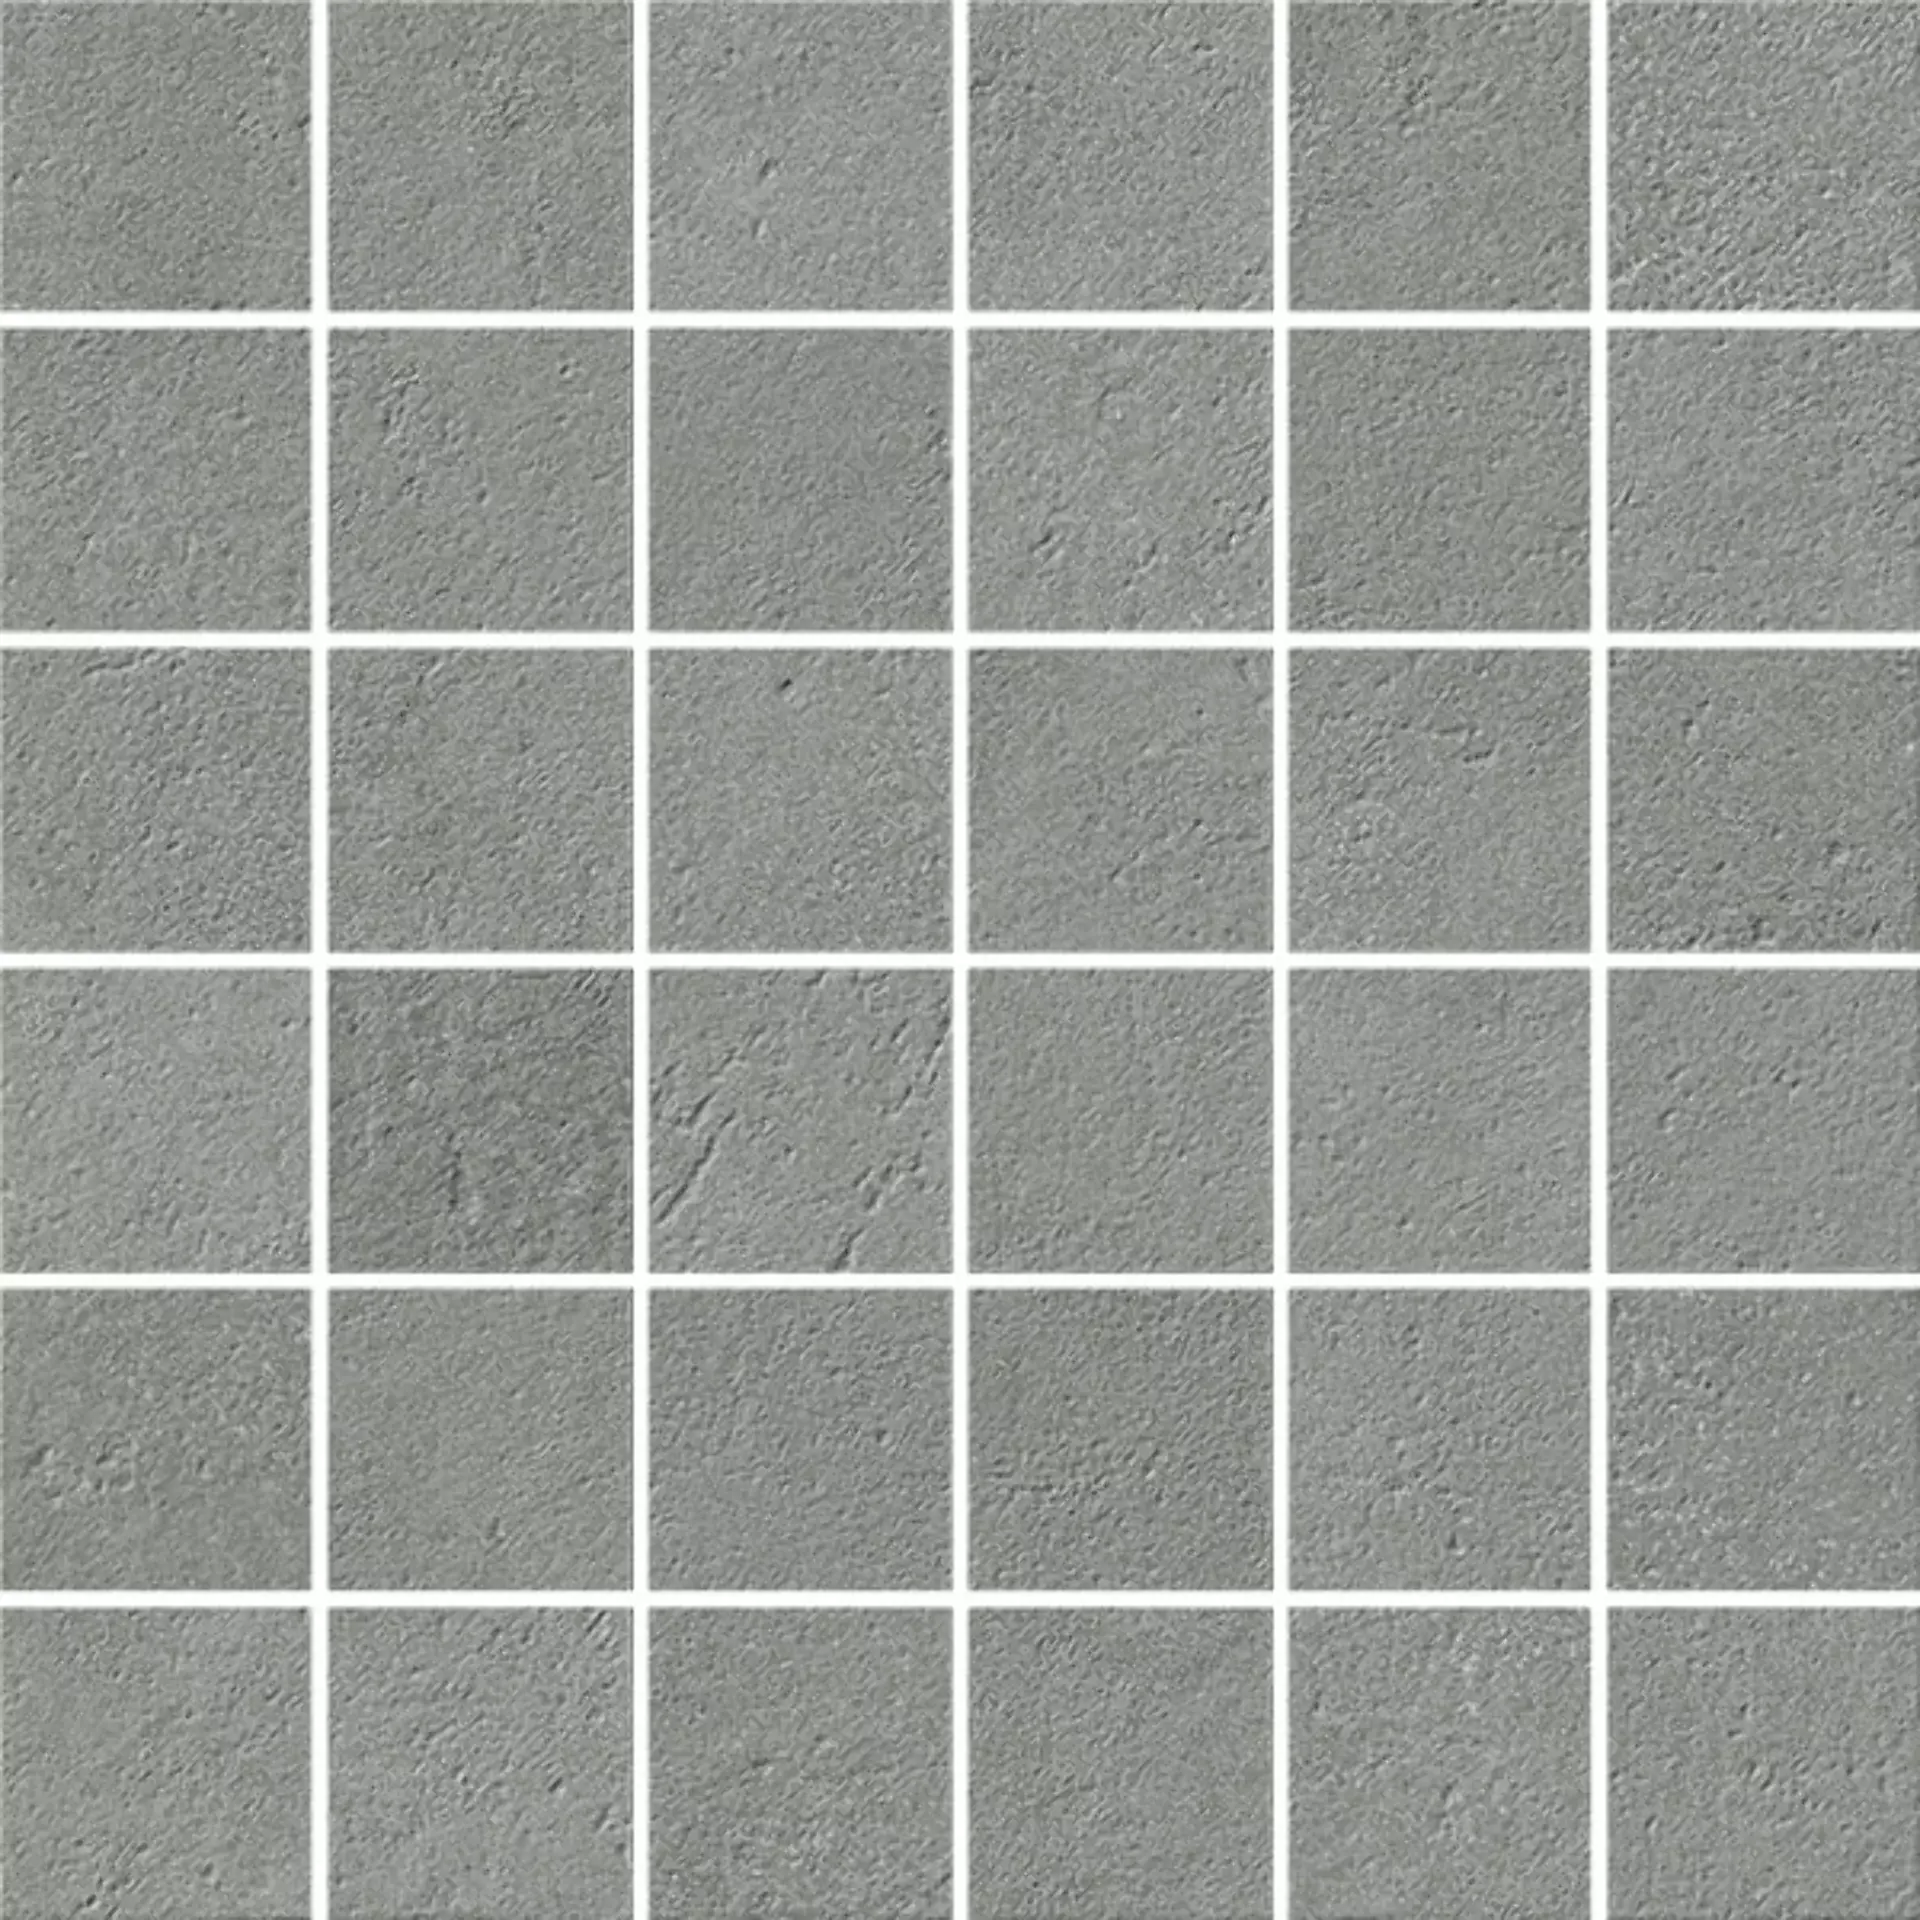 Italgraniti I Cementi Grey Strideup Grey FL063MA soft 30x30cm Mosaik 9mm